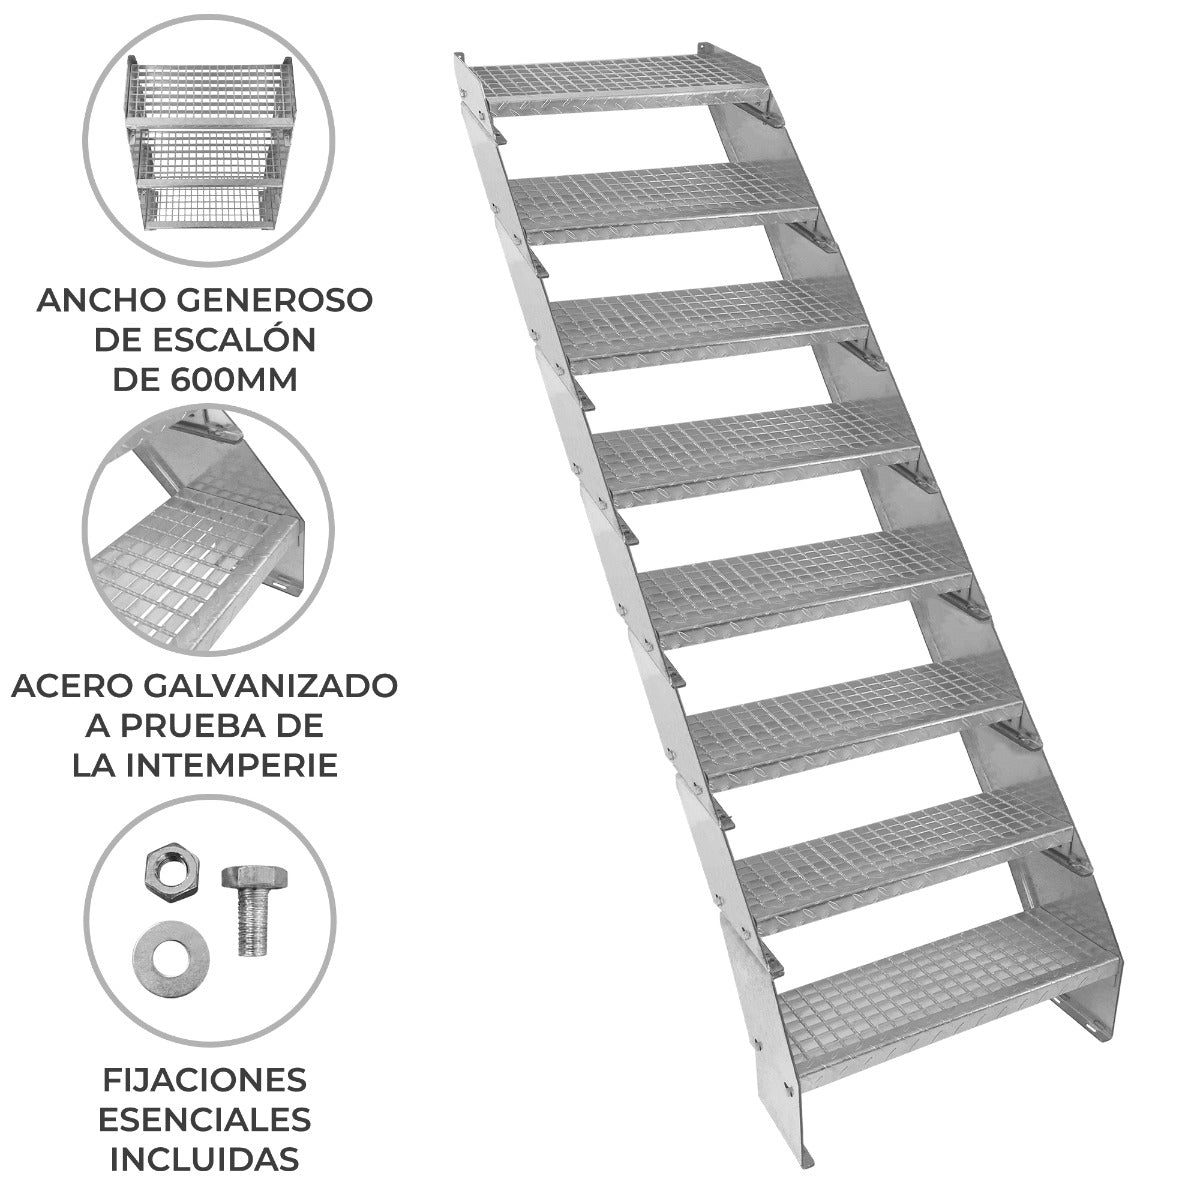 Escalera Galvanizada Ajustable de 8 Escalones – 600mm de Ancho